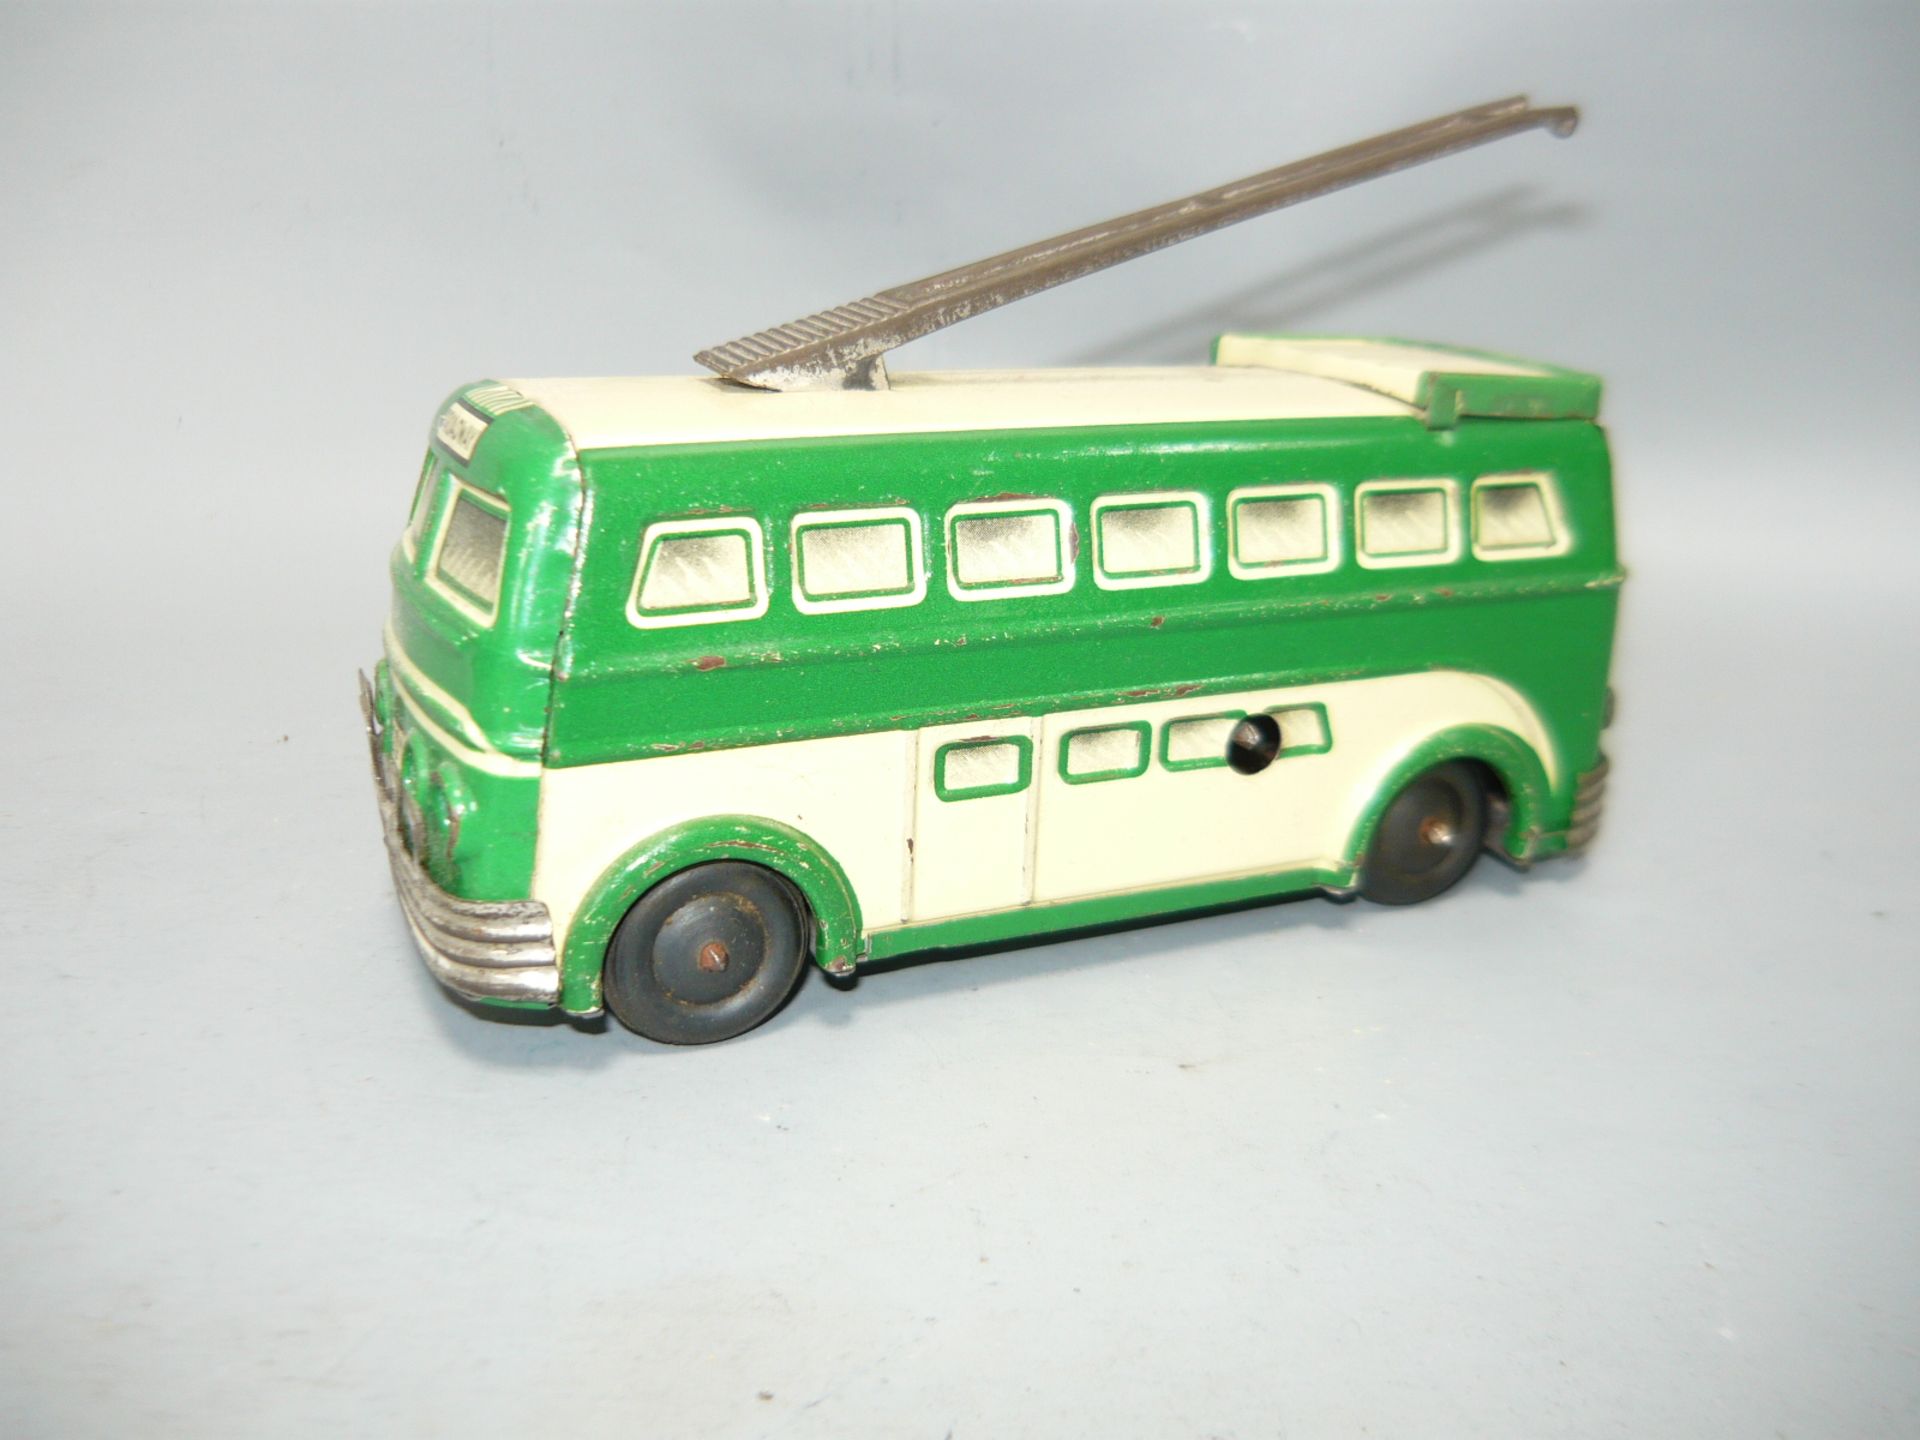 Broadway Strombus. Made in France. Blech, Vintage. L. 14cm. Zum aufziehen. Nicht geprüft, ohne